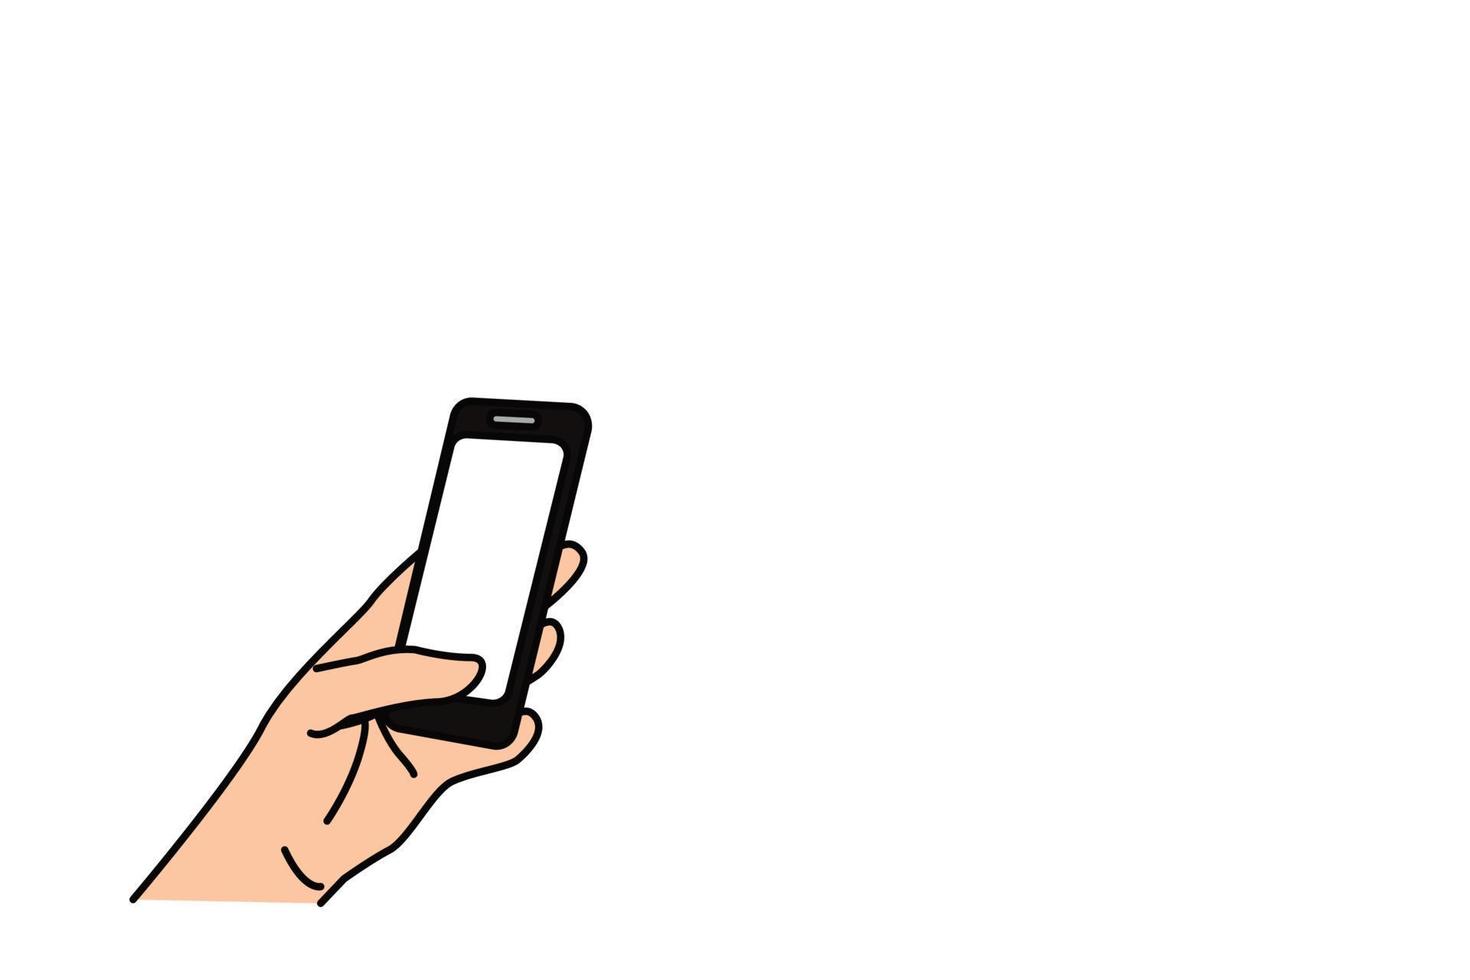 teléfono inteligente en la mano con el pulgar presionando la pantalla en blanco, ilustración vectorial aislada en el fondo blanco vector